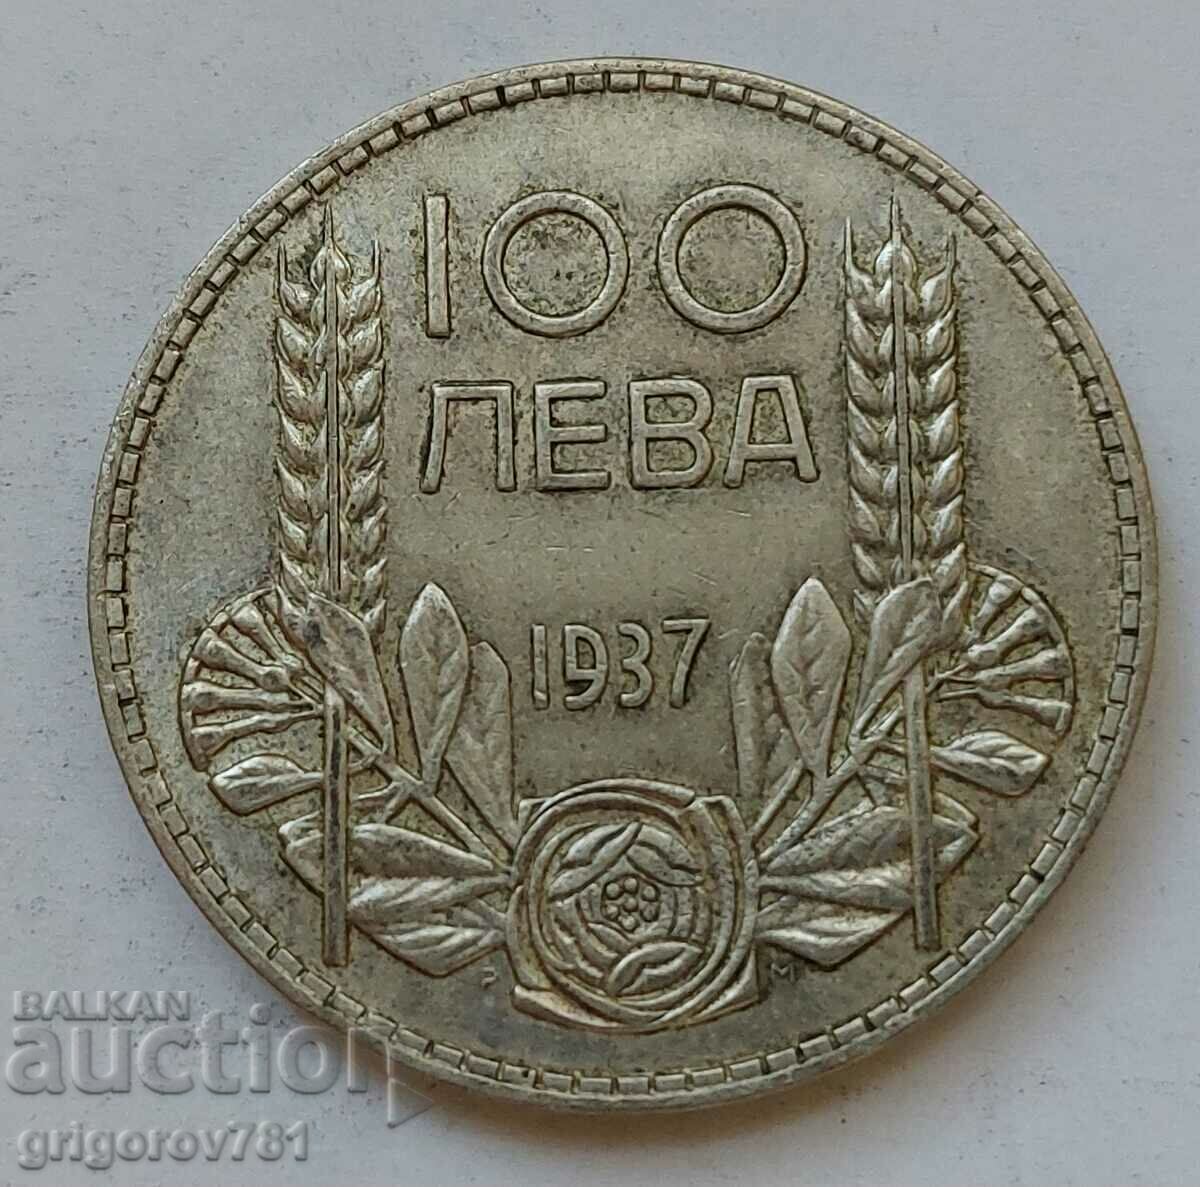 100 leva silver Bulgaria 1937 - silver coin #141